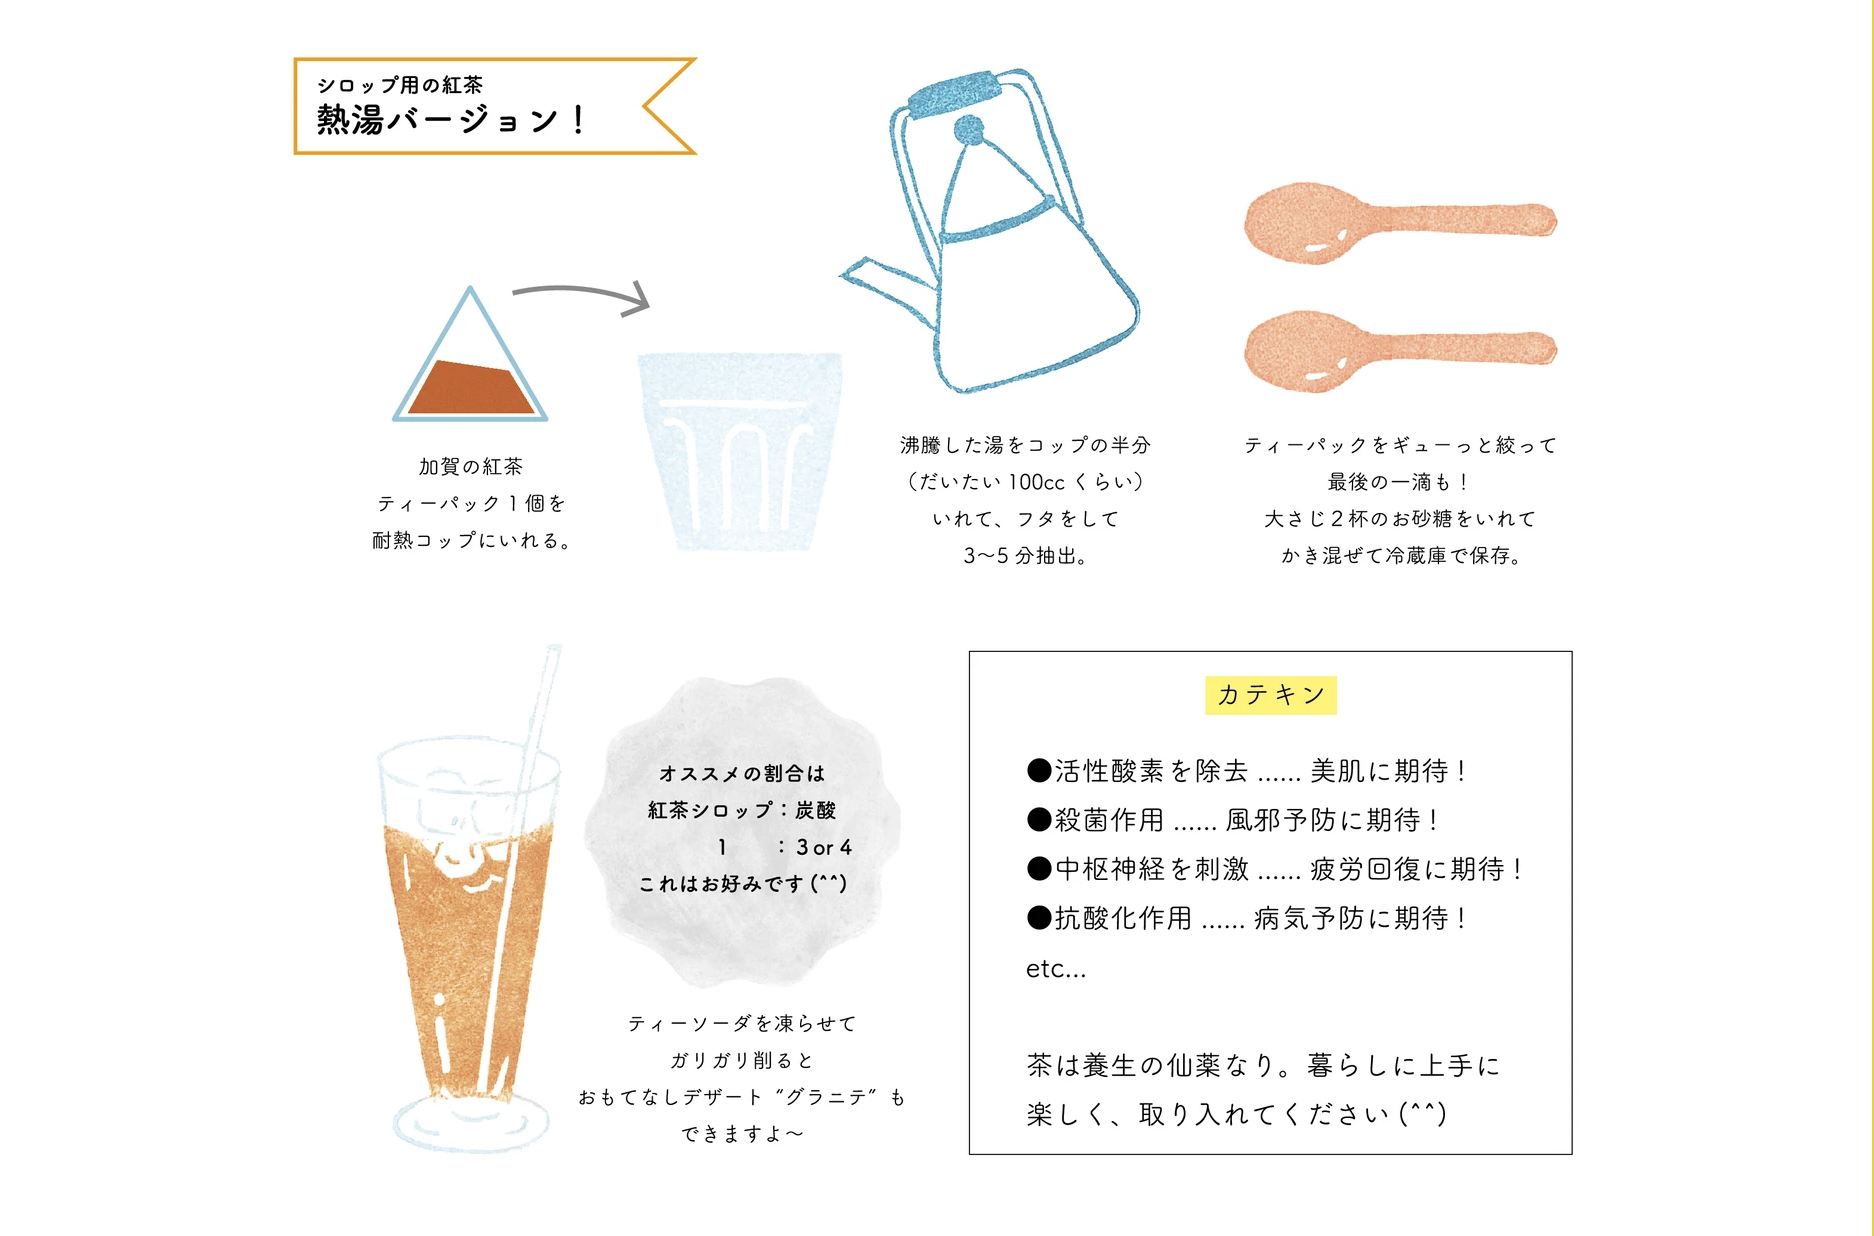 加賀の紅茶で作る、夏ティーレシピ「ティーソーダ」